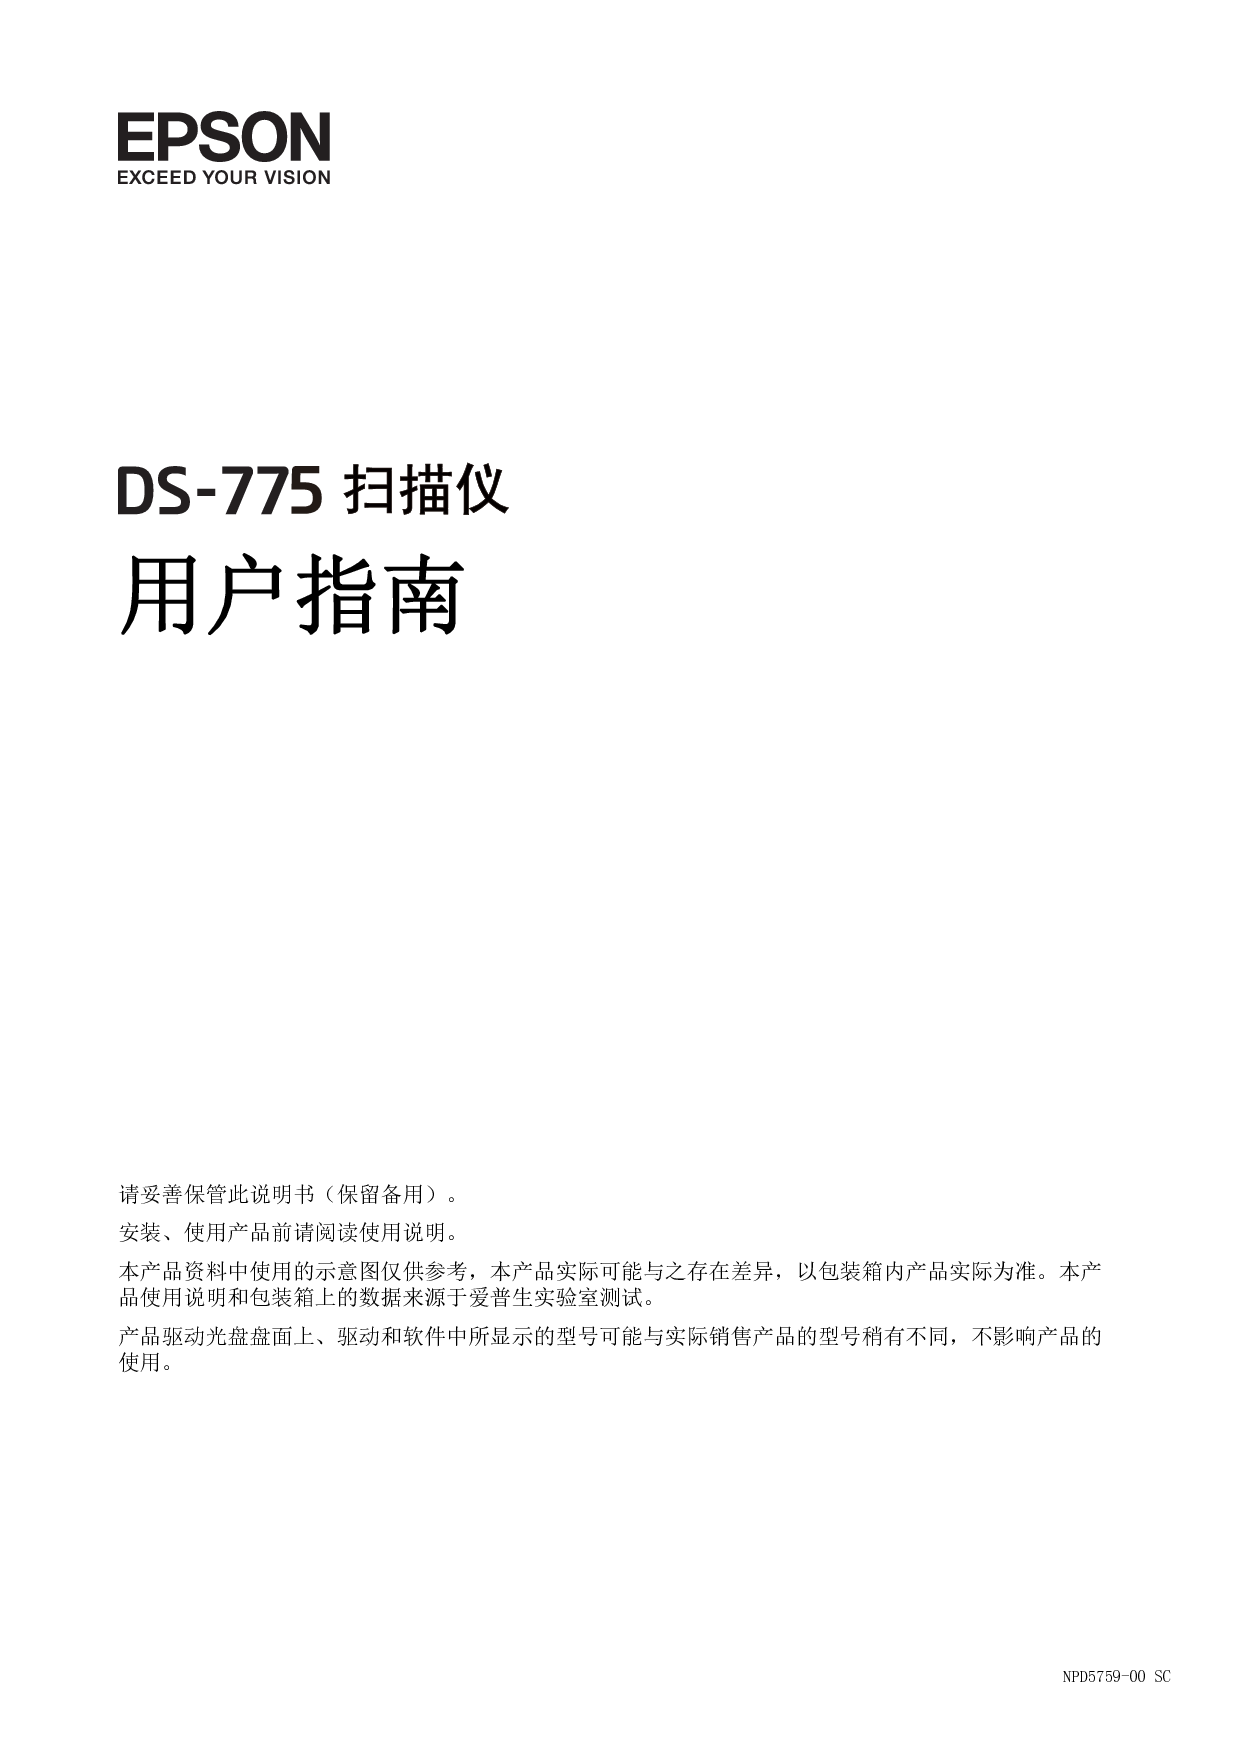 爱普生 Epson DS-775 用户指南 封面